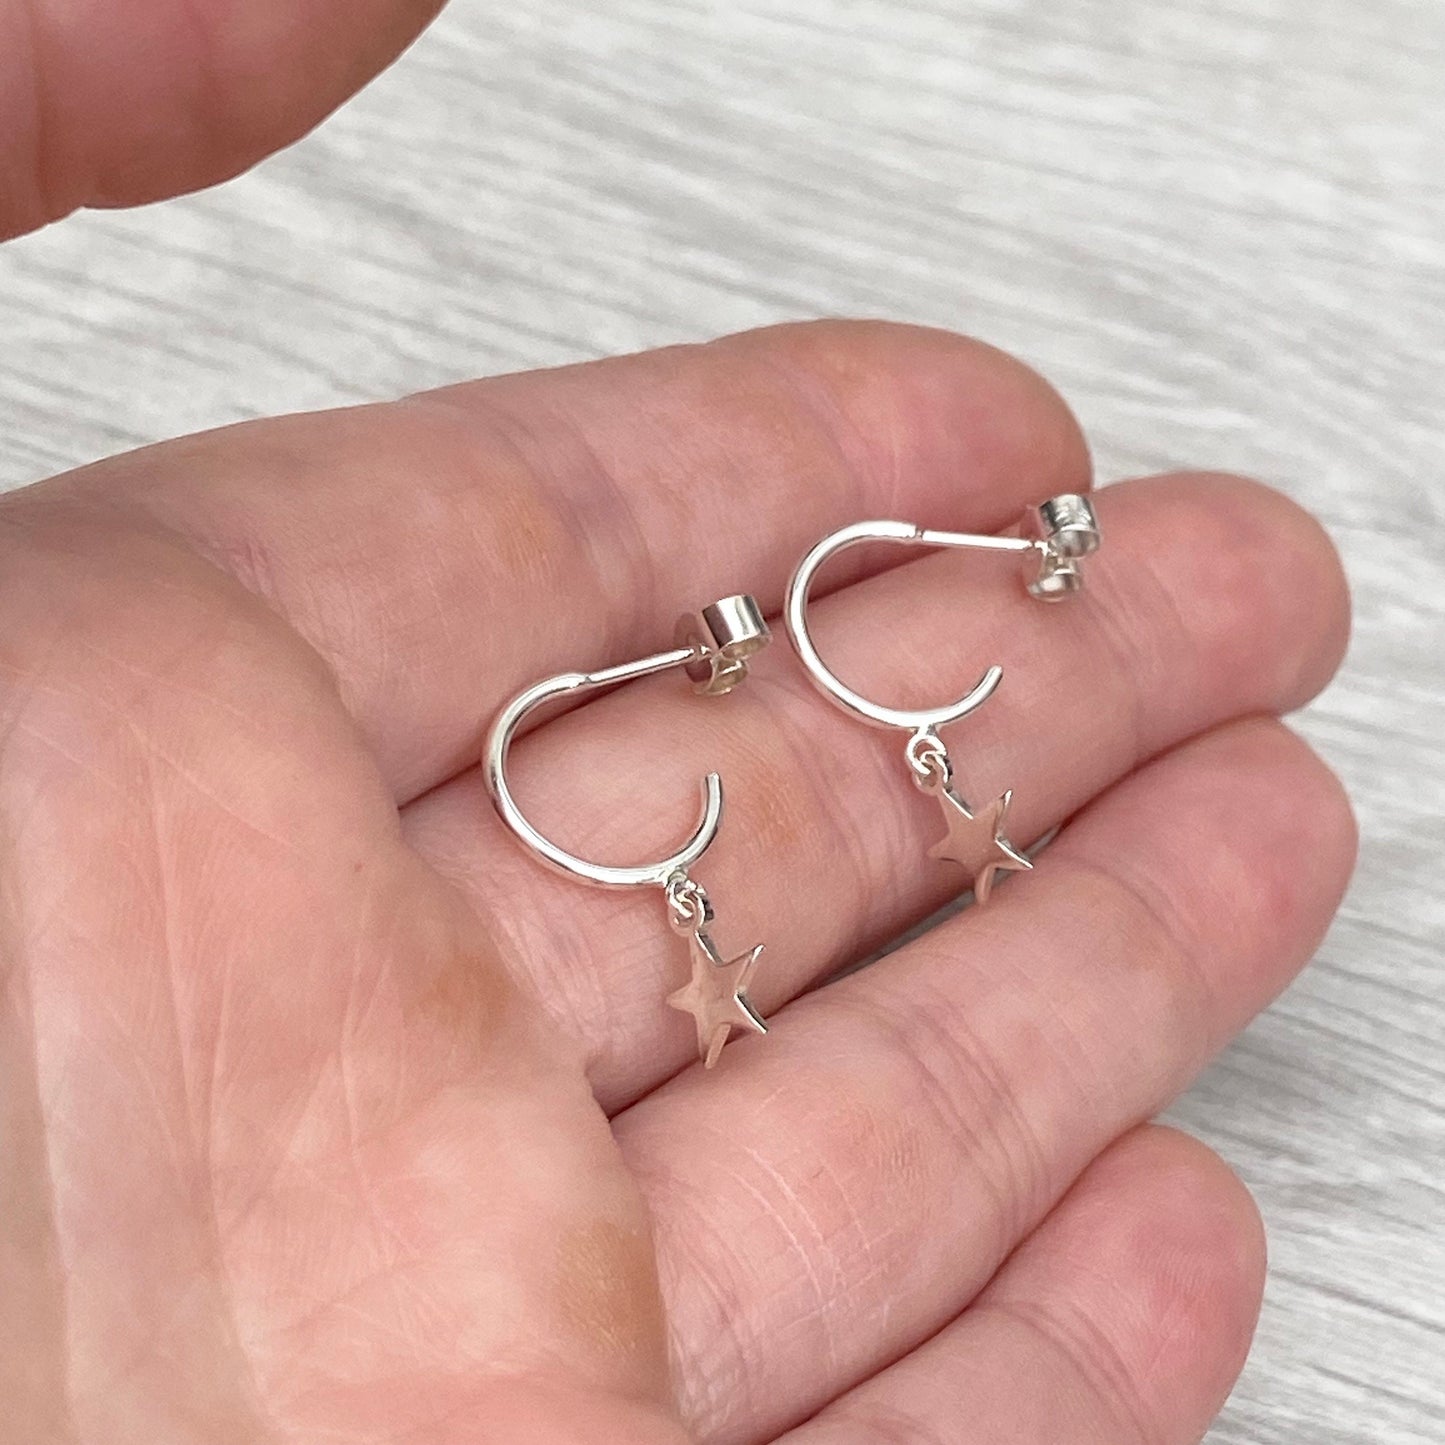 Silver tiny drop star hoop earrings - 12mm silver hoops